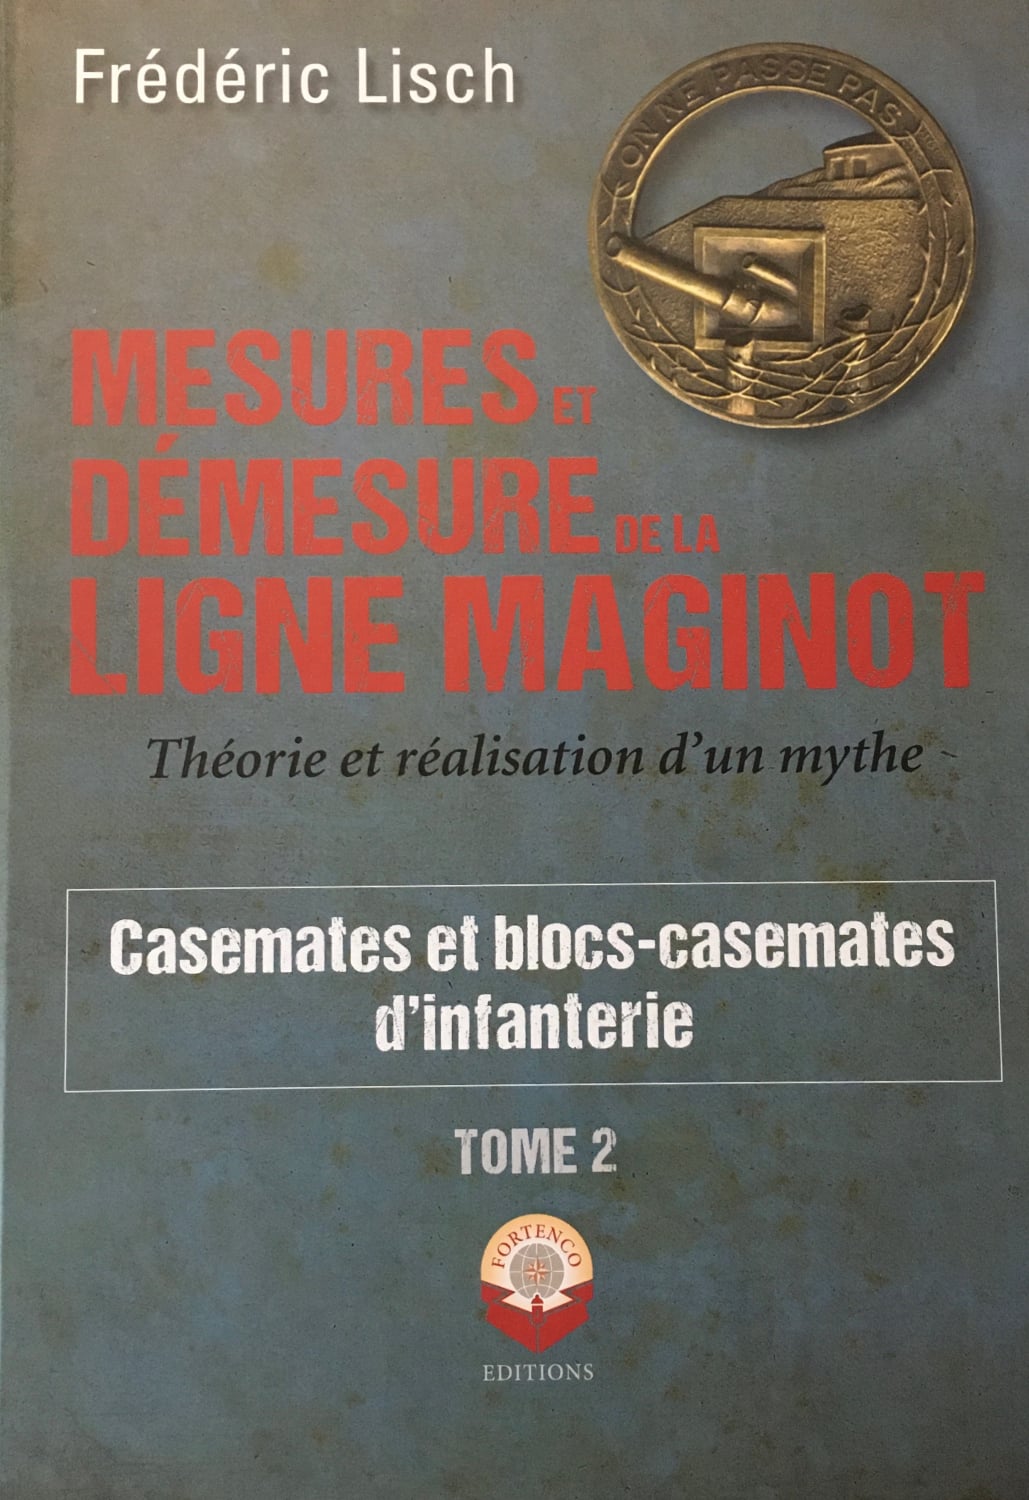 Livre - Mesures et démesures de la ligne Maginot - Tome 2 (Frédéric Lisch) - Frédéric Lisch